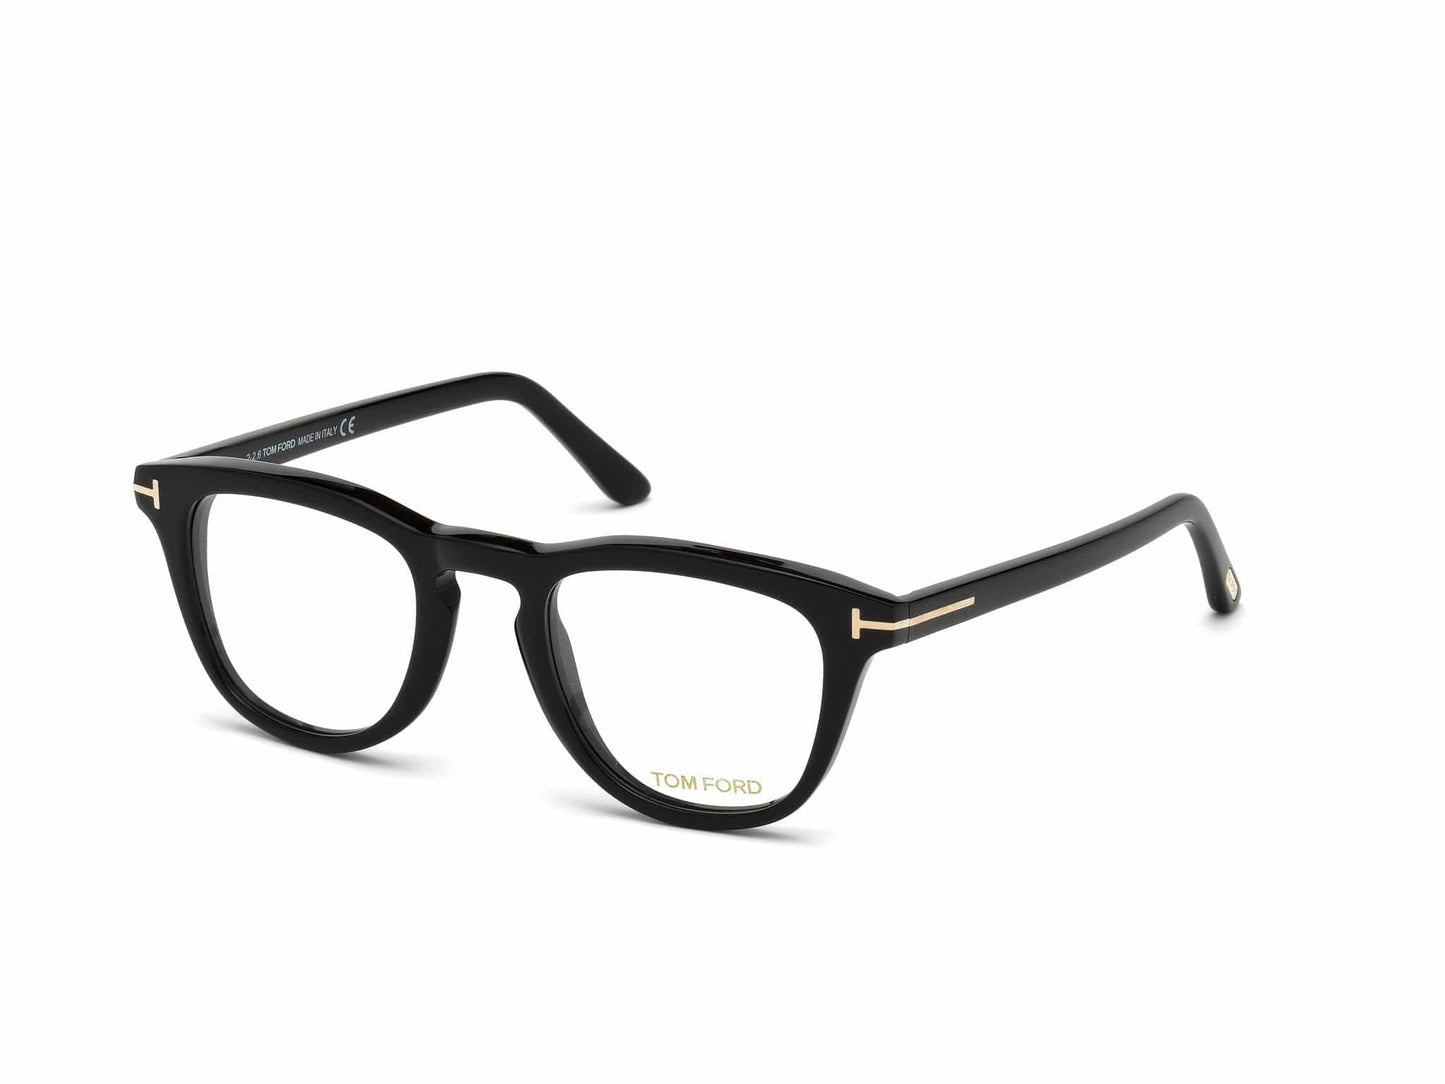 Tom Ford FT5488-B Round Eyeglasses 001-001 - Shiny Black/ Blue Block Lenses